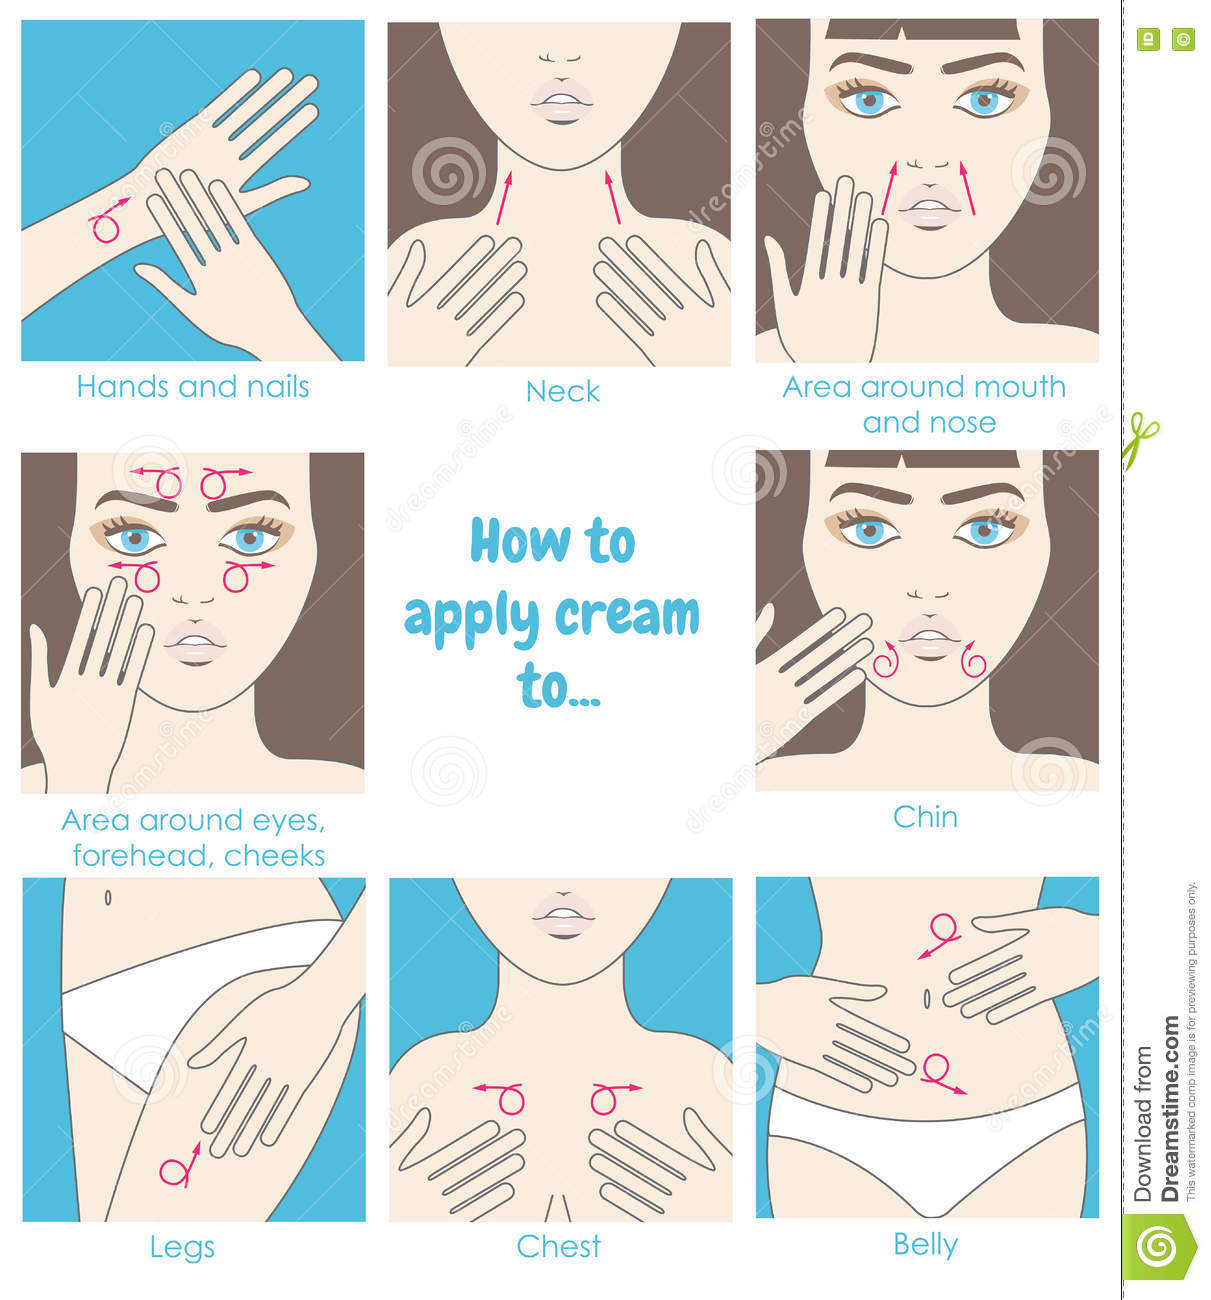 ¿Como aplicar la crema en cara y cuello?